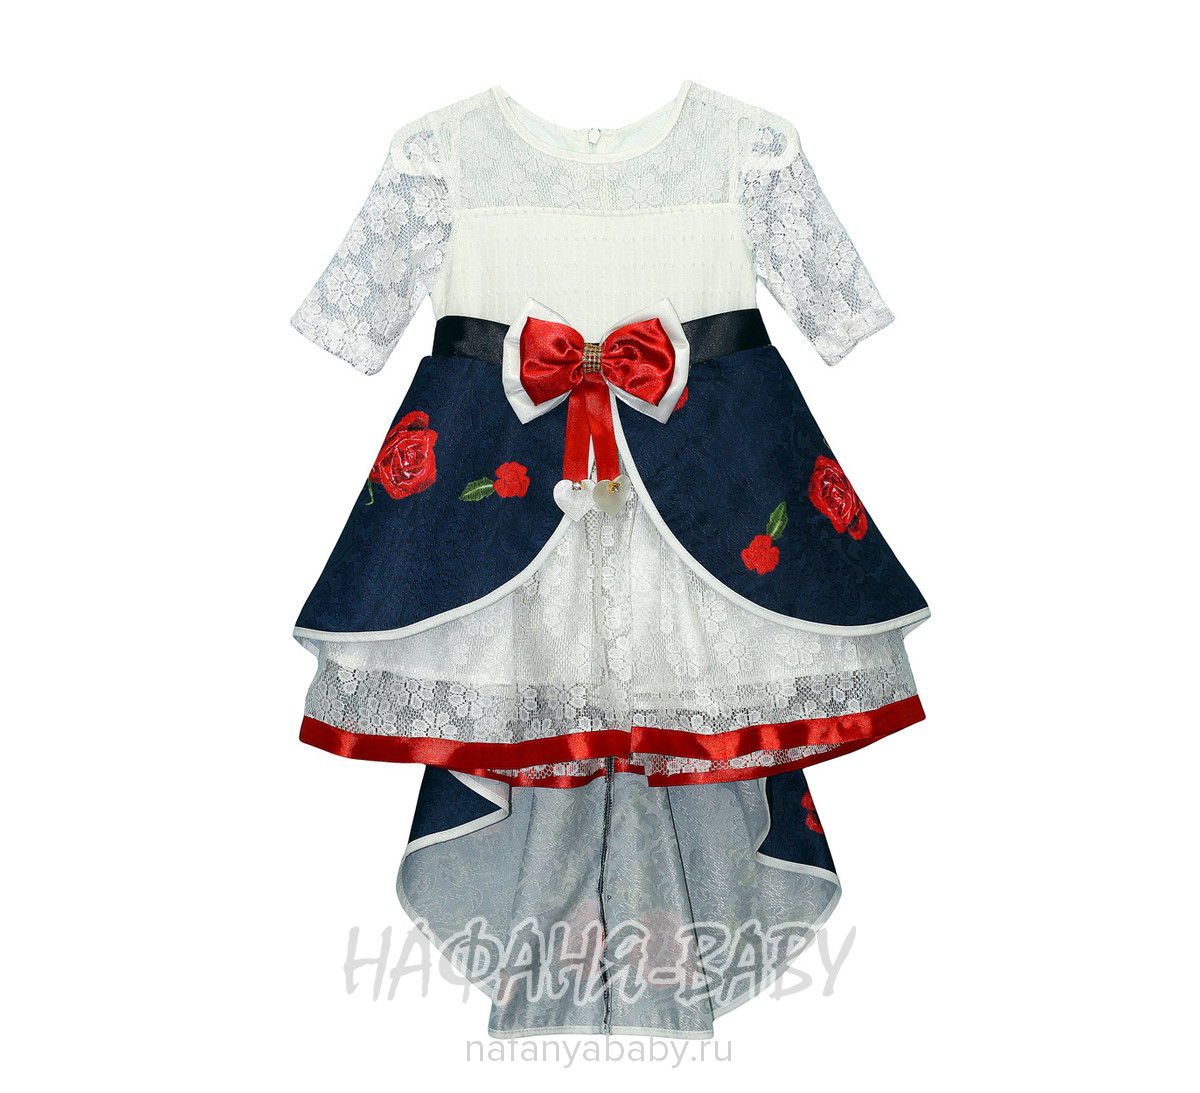 Детское нарядное платье Miss GOLDEN арт: 2116, 1-4 года, цвет темно-синий, оптом Турция